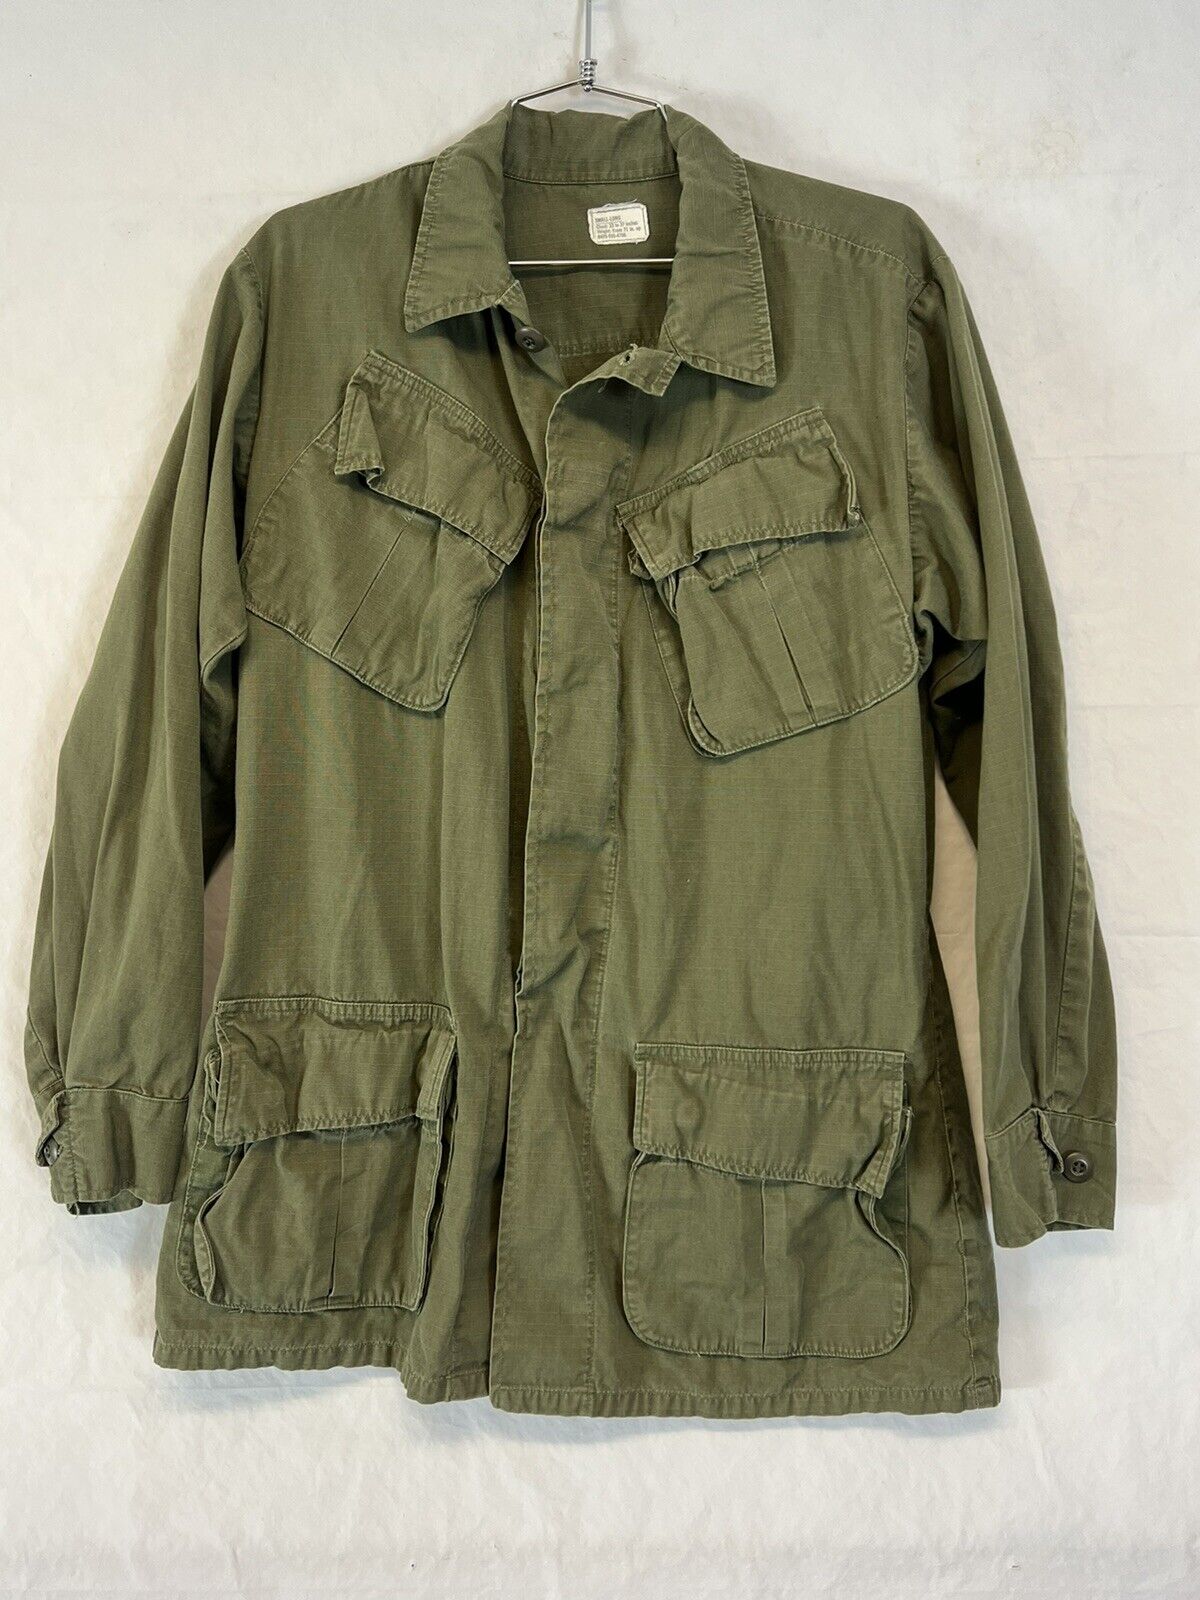 Vietnam Jungle Jacket Size Small OG 107 Slant Pocket Rip-Stop 60's 1969 Army